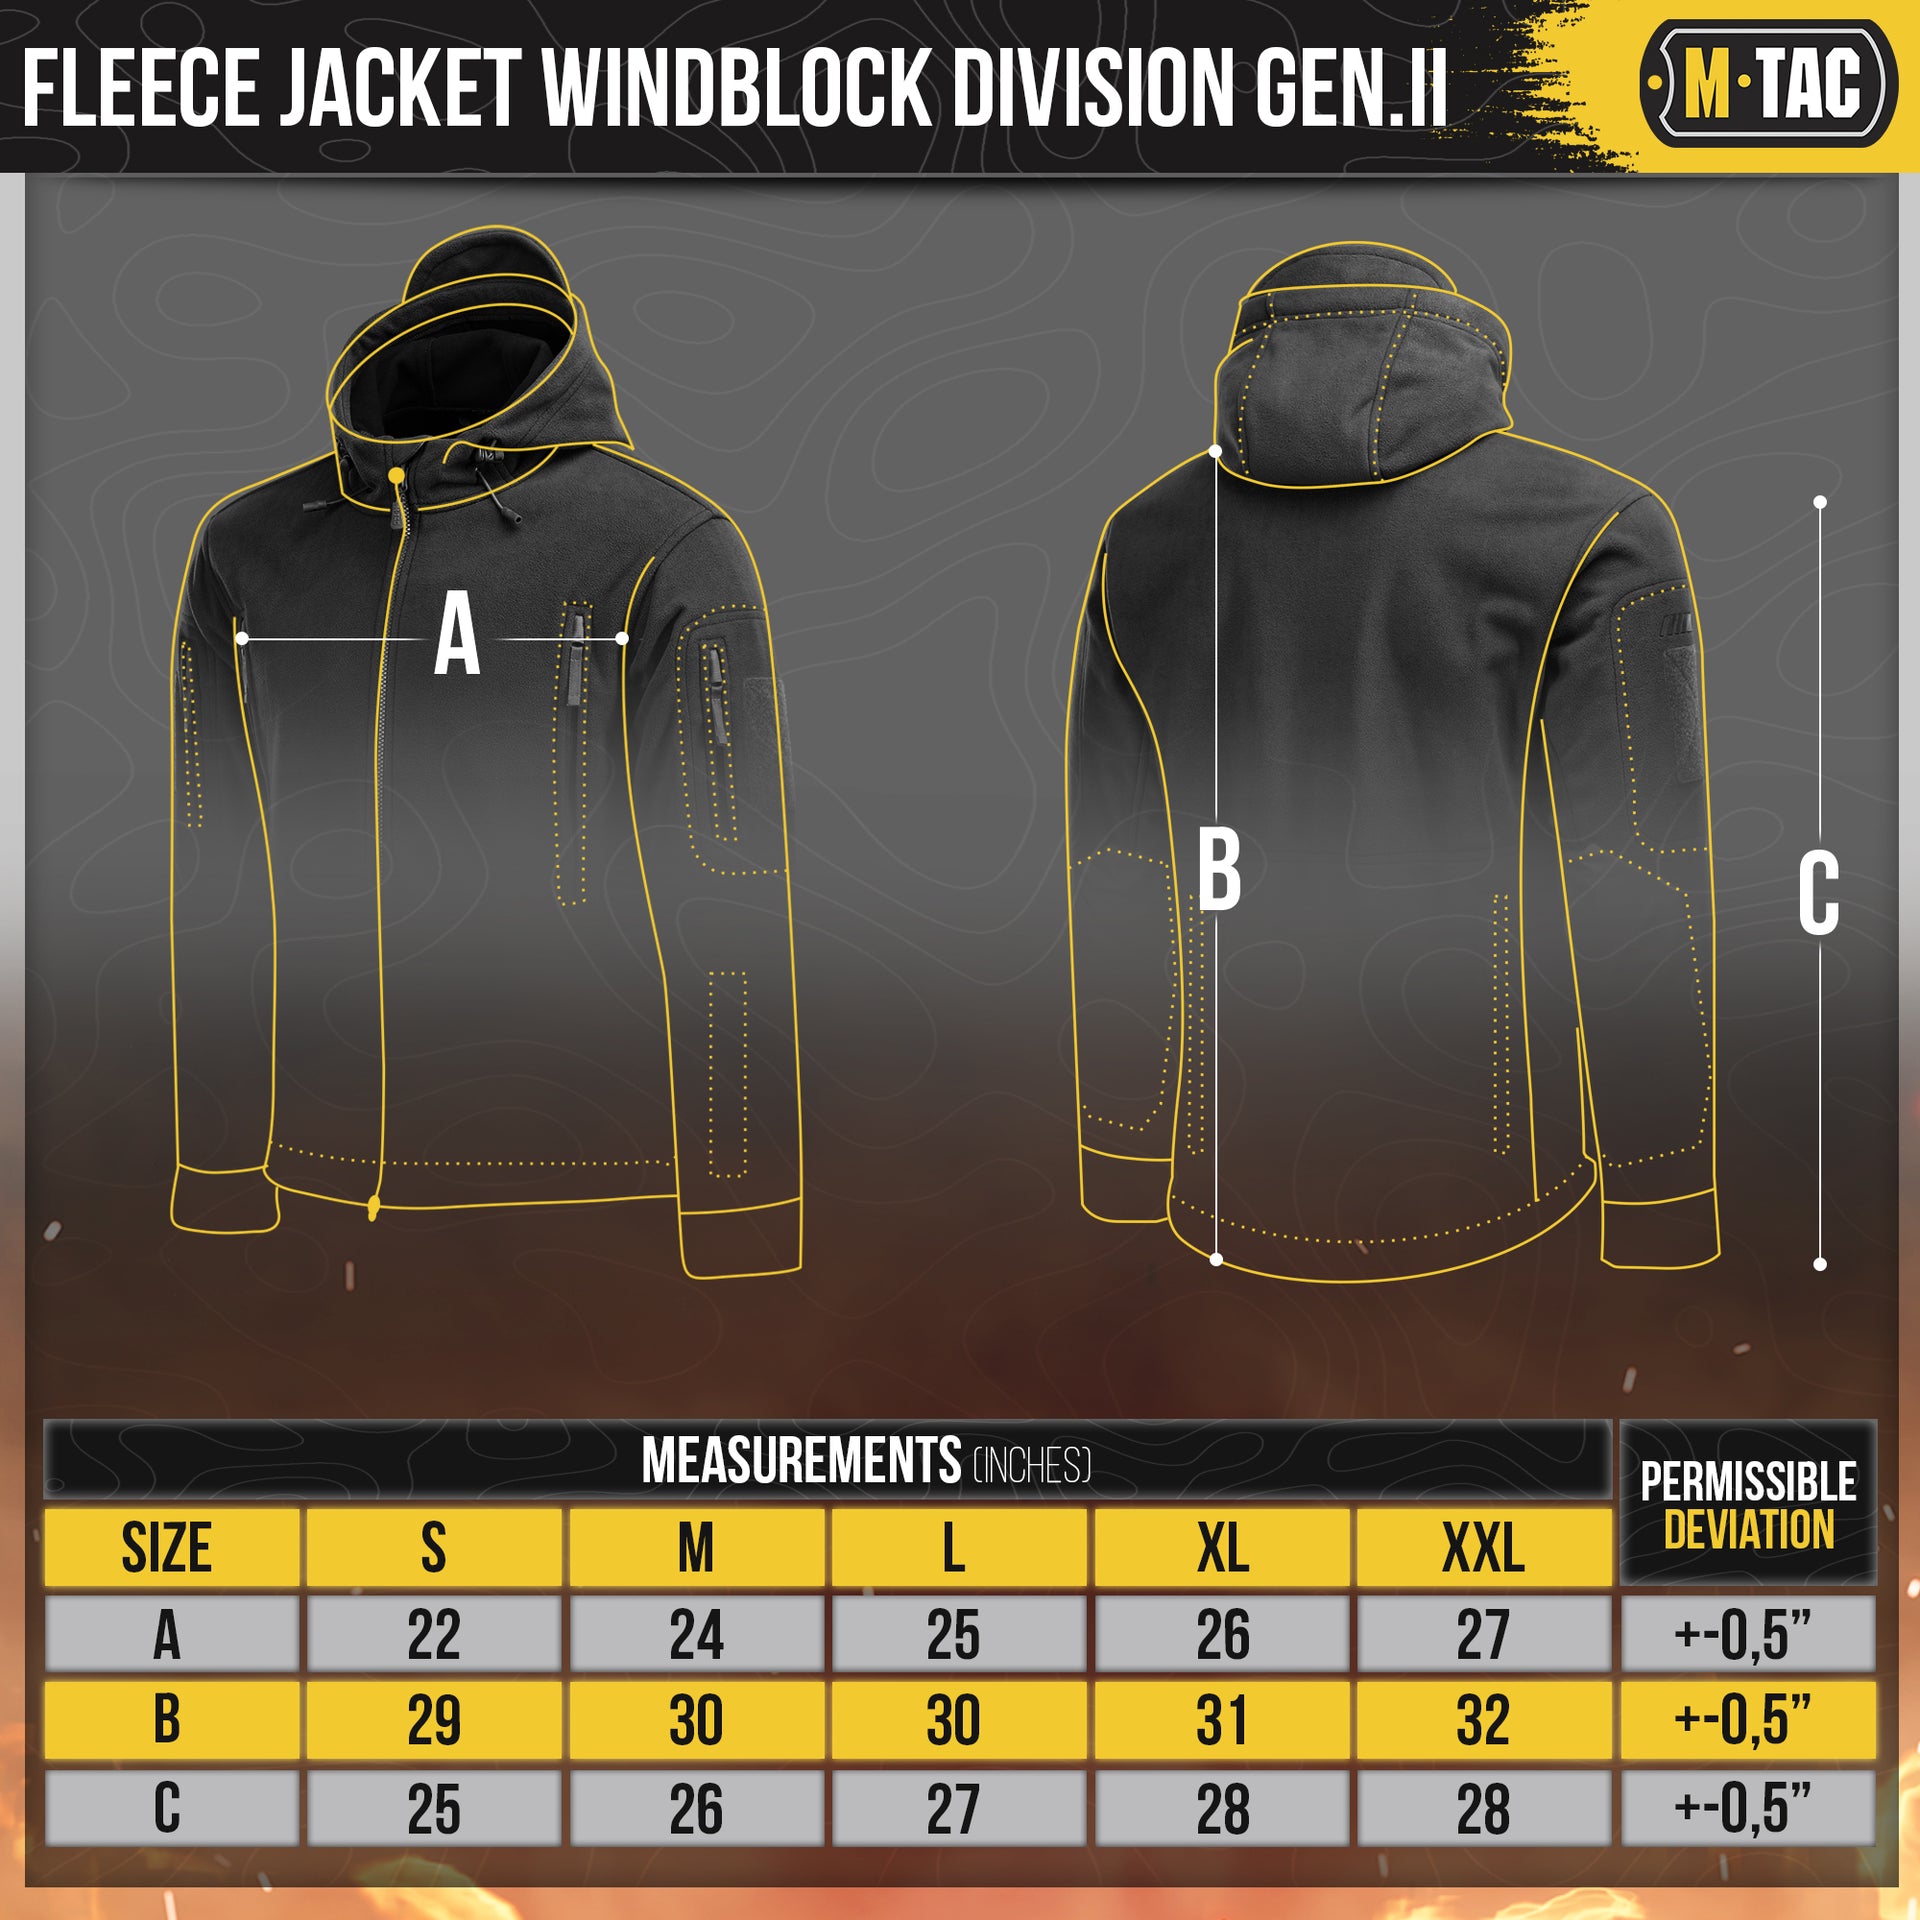 M-Tac Fleece Jacket Windblock Division Gen.II